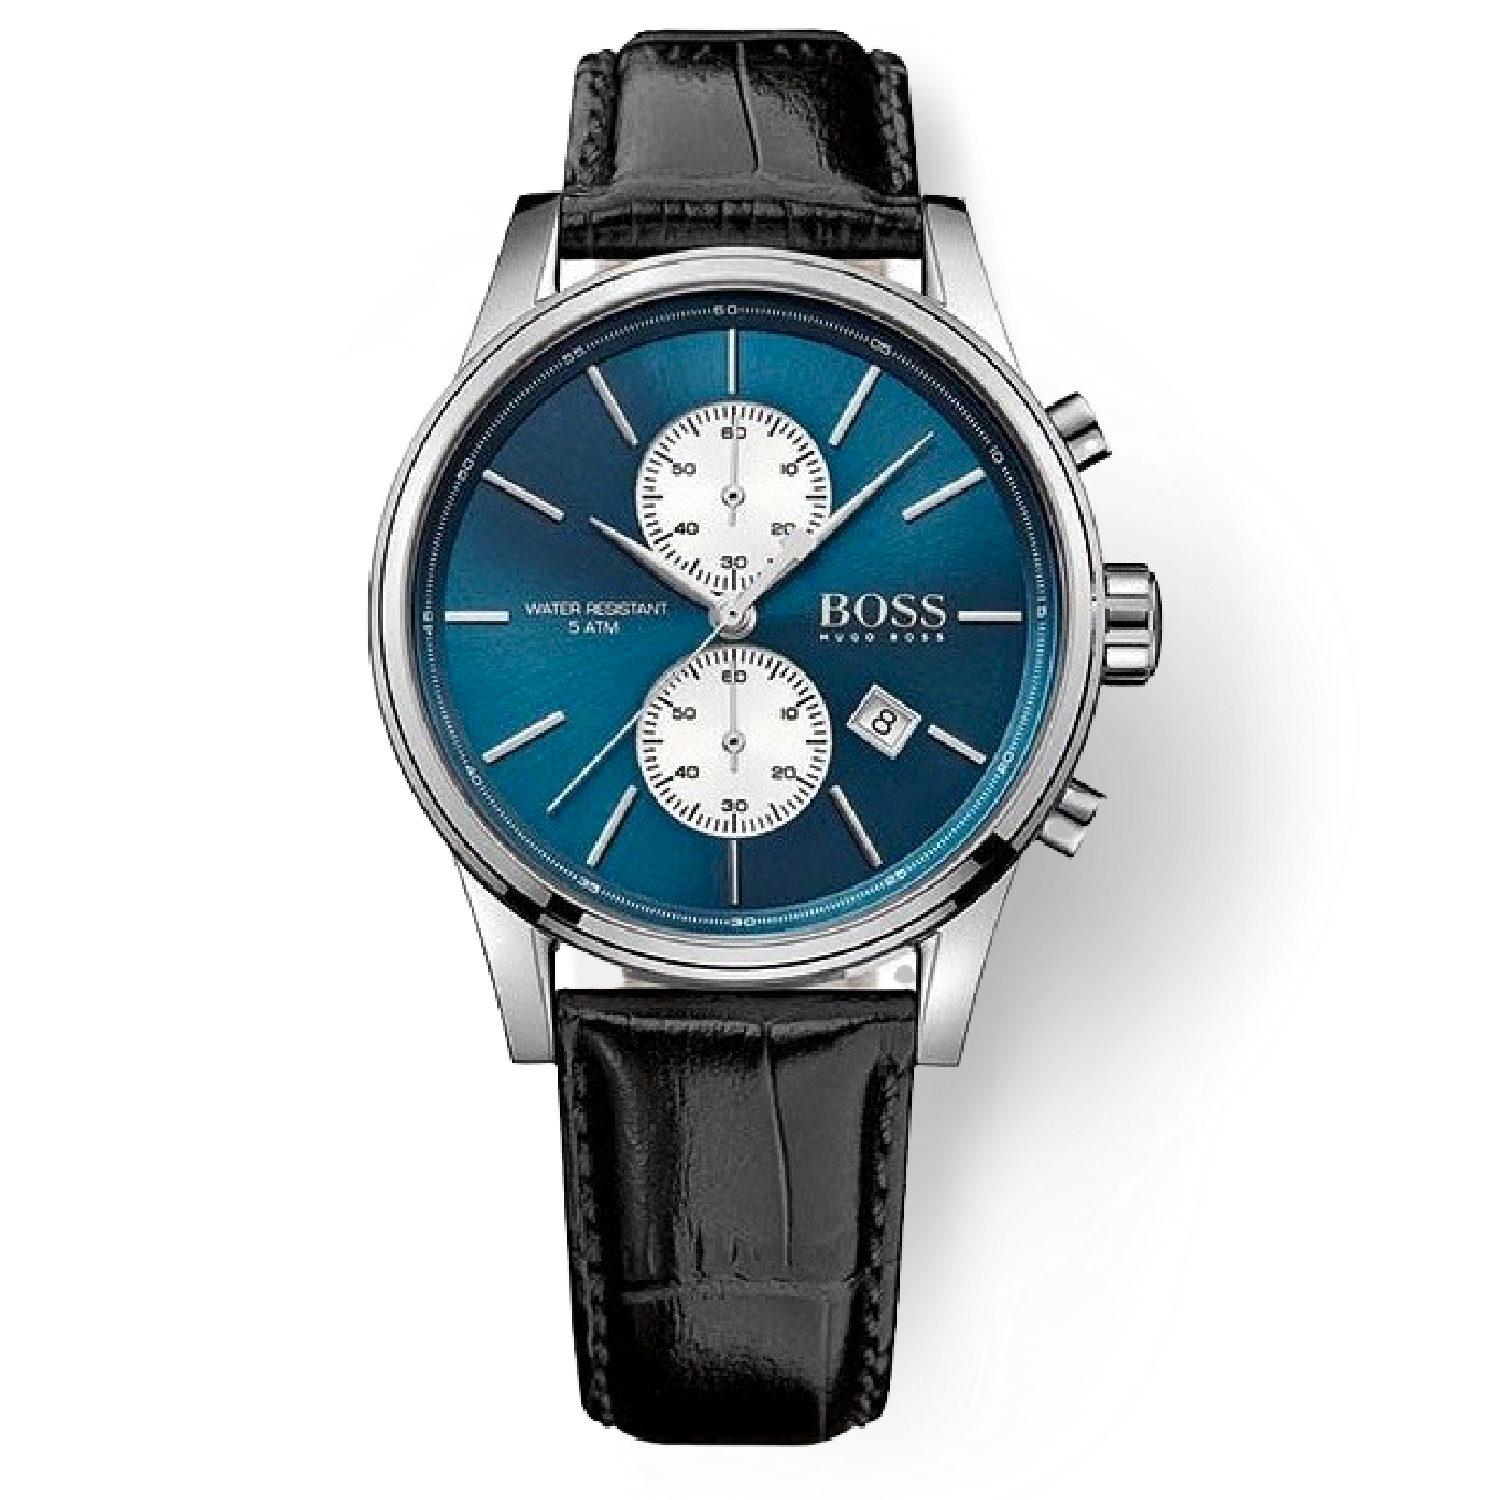 ساعت مچی کرنوگراف هوگو باس Hugo Boss  مدل 1513283